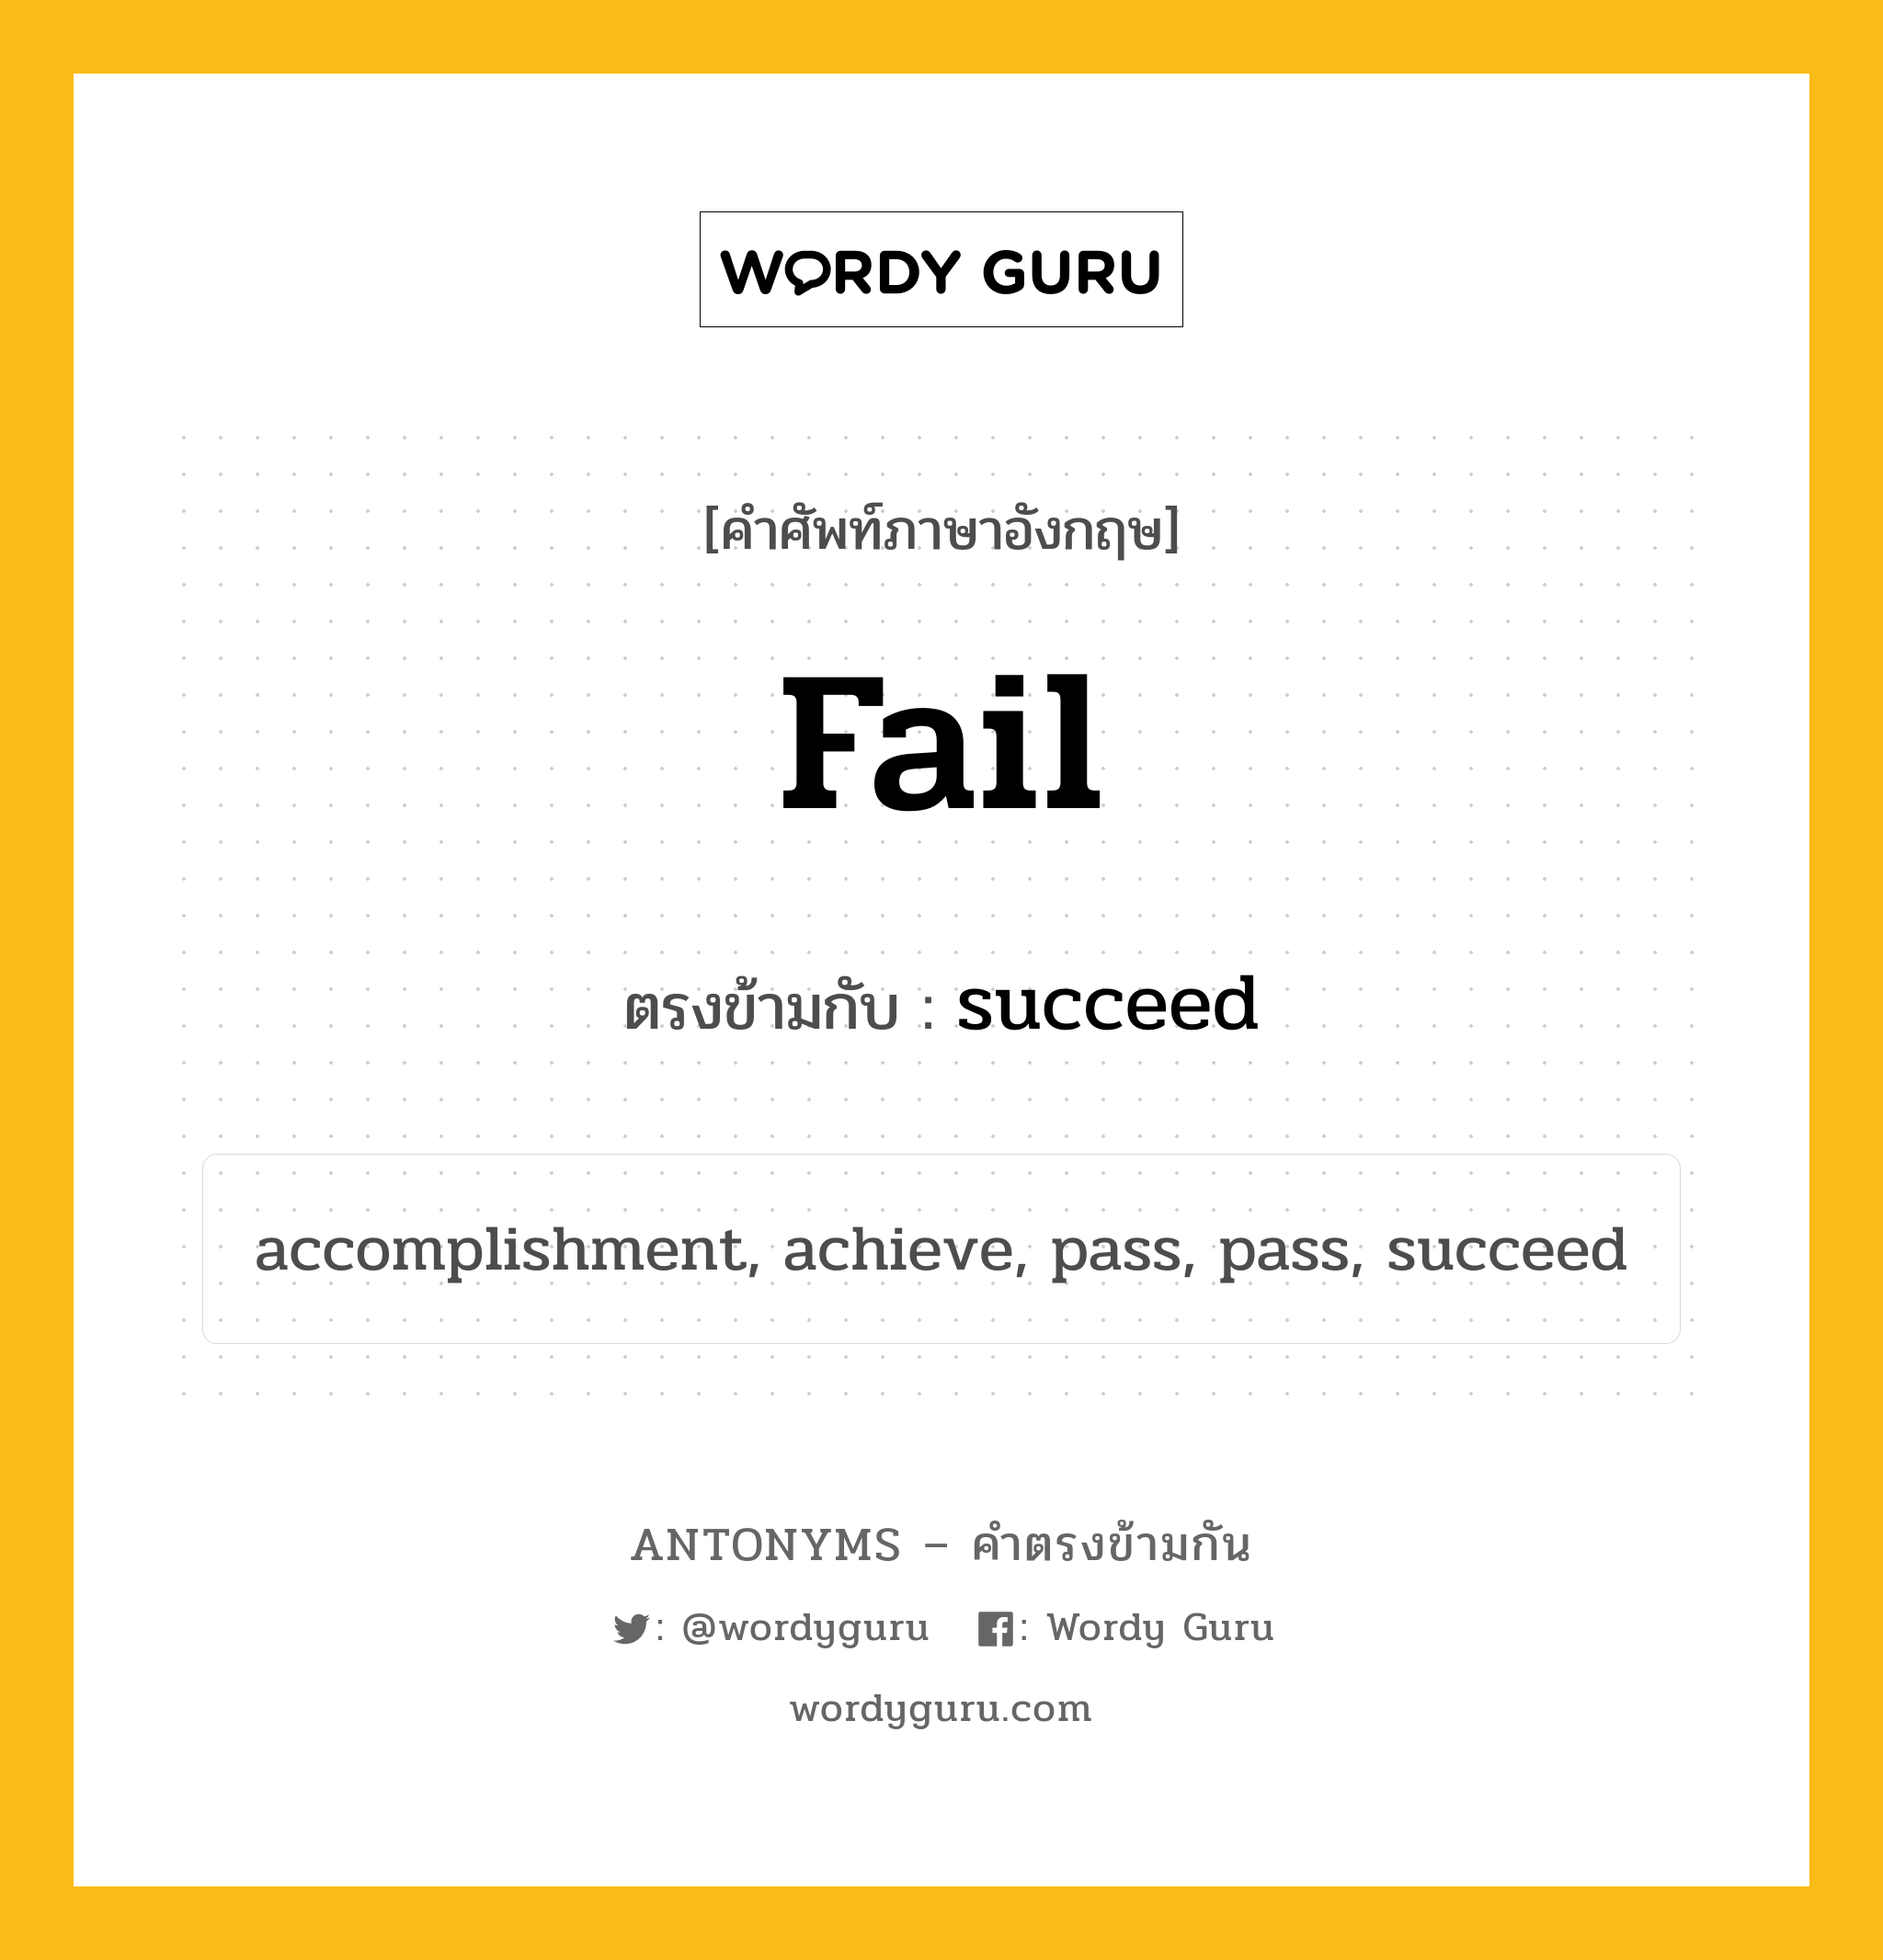 fail เป็นคำตรงข้ามกับคำไหนบ้าง?, คำศัพท์ภาษาอังกฤษ fail ตรงข้ามกับ succeed หมวด succeed